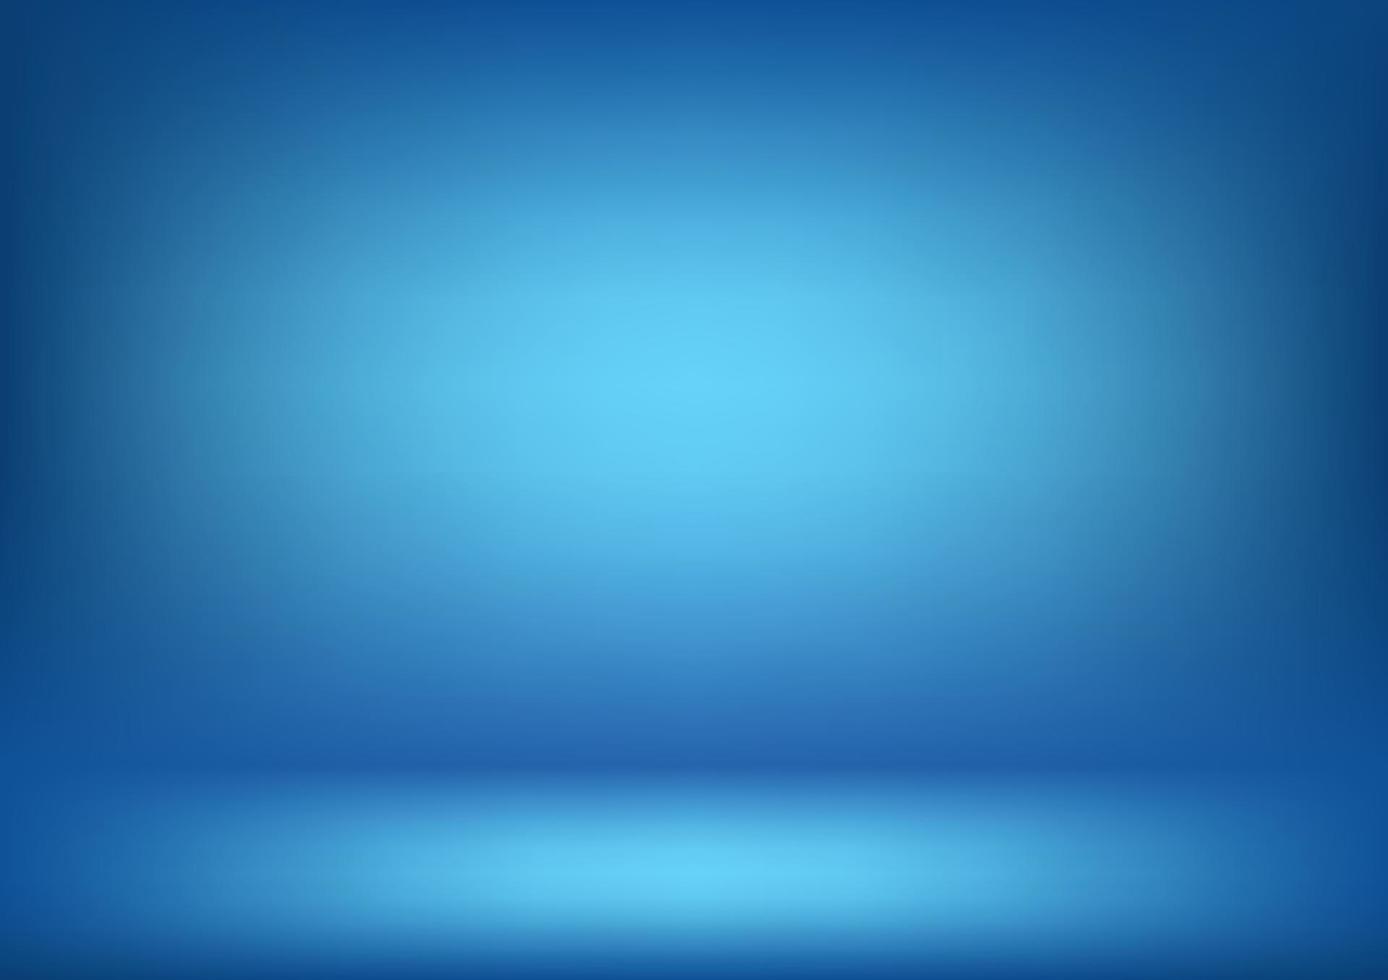 blauwe kamer abstracte achtergrond voor behang, technologie, wetenschap, achtergrond, sjabloon vectorillustratie vector